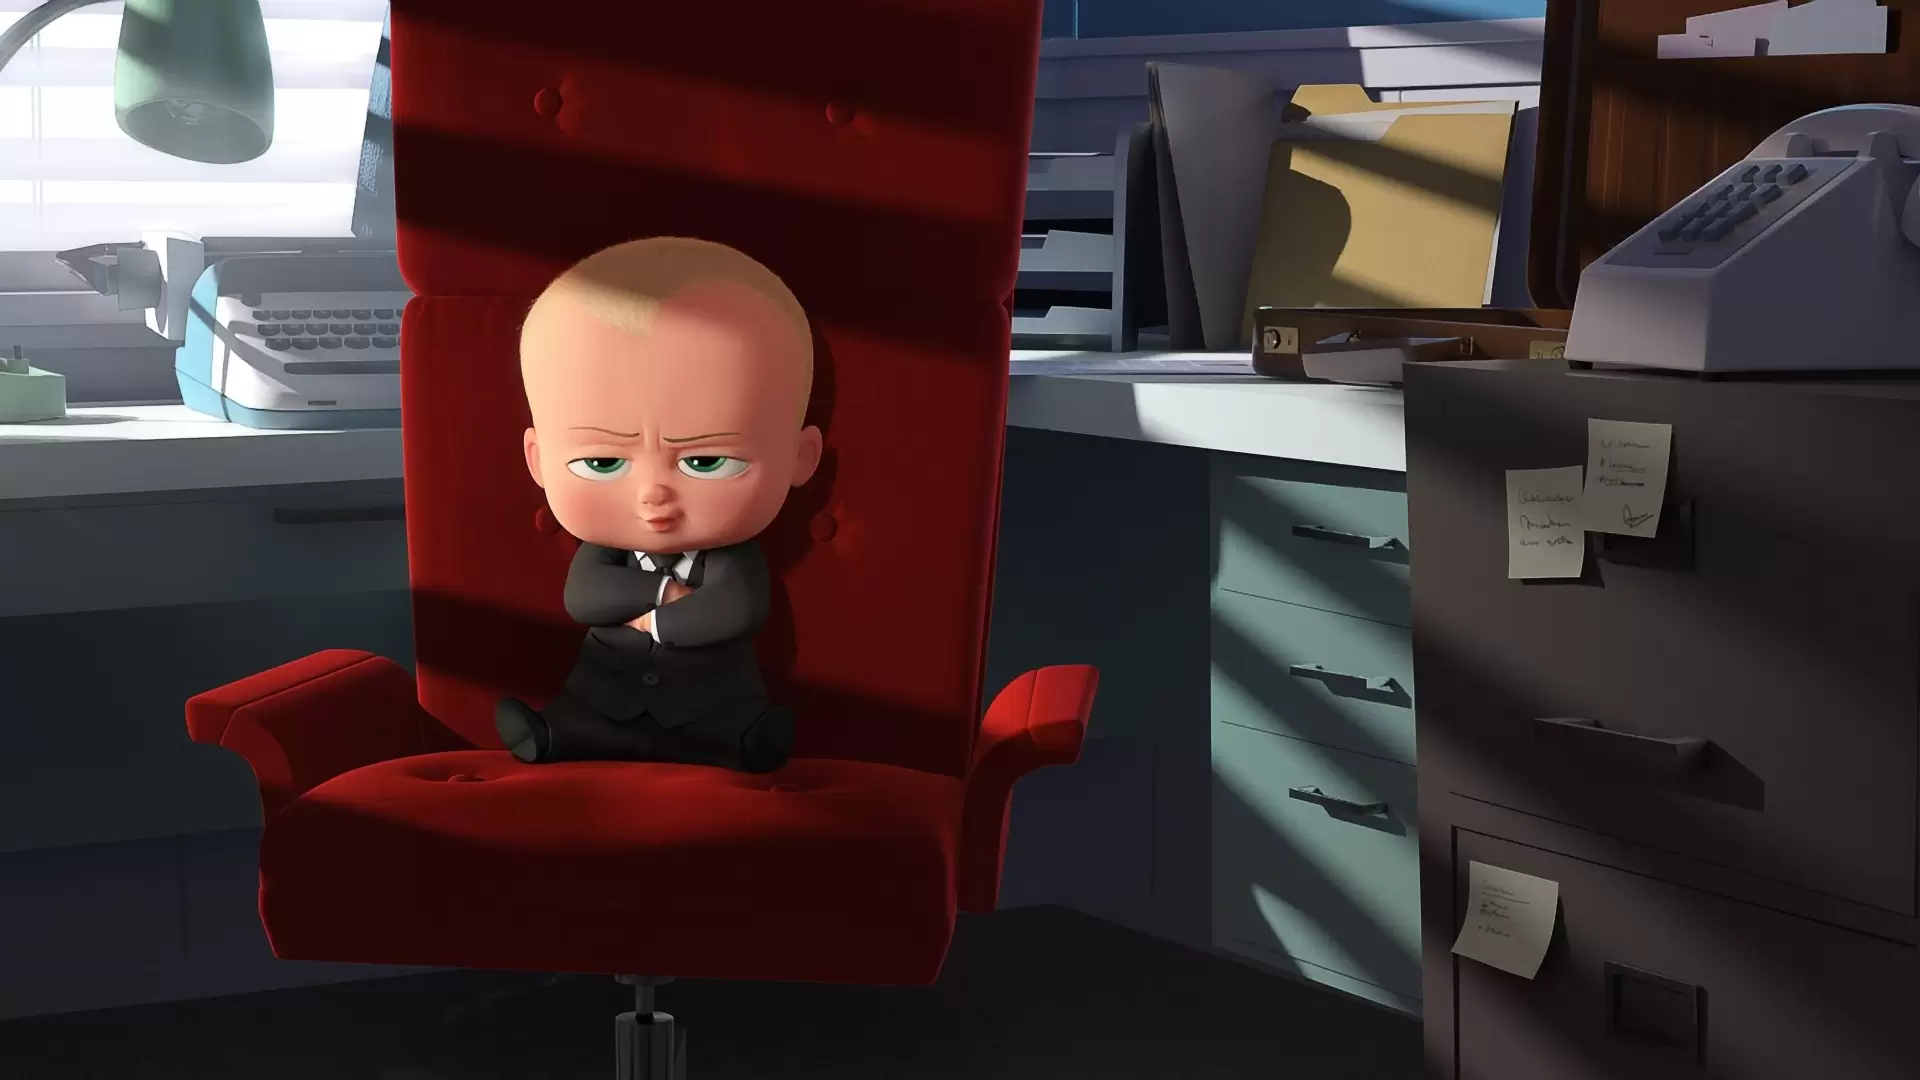 دانلود انیمیشن The Boss Baby 2017 (بچه رئیس) با زیرنویس فارسی و تماشای آنلاین